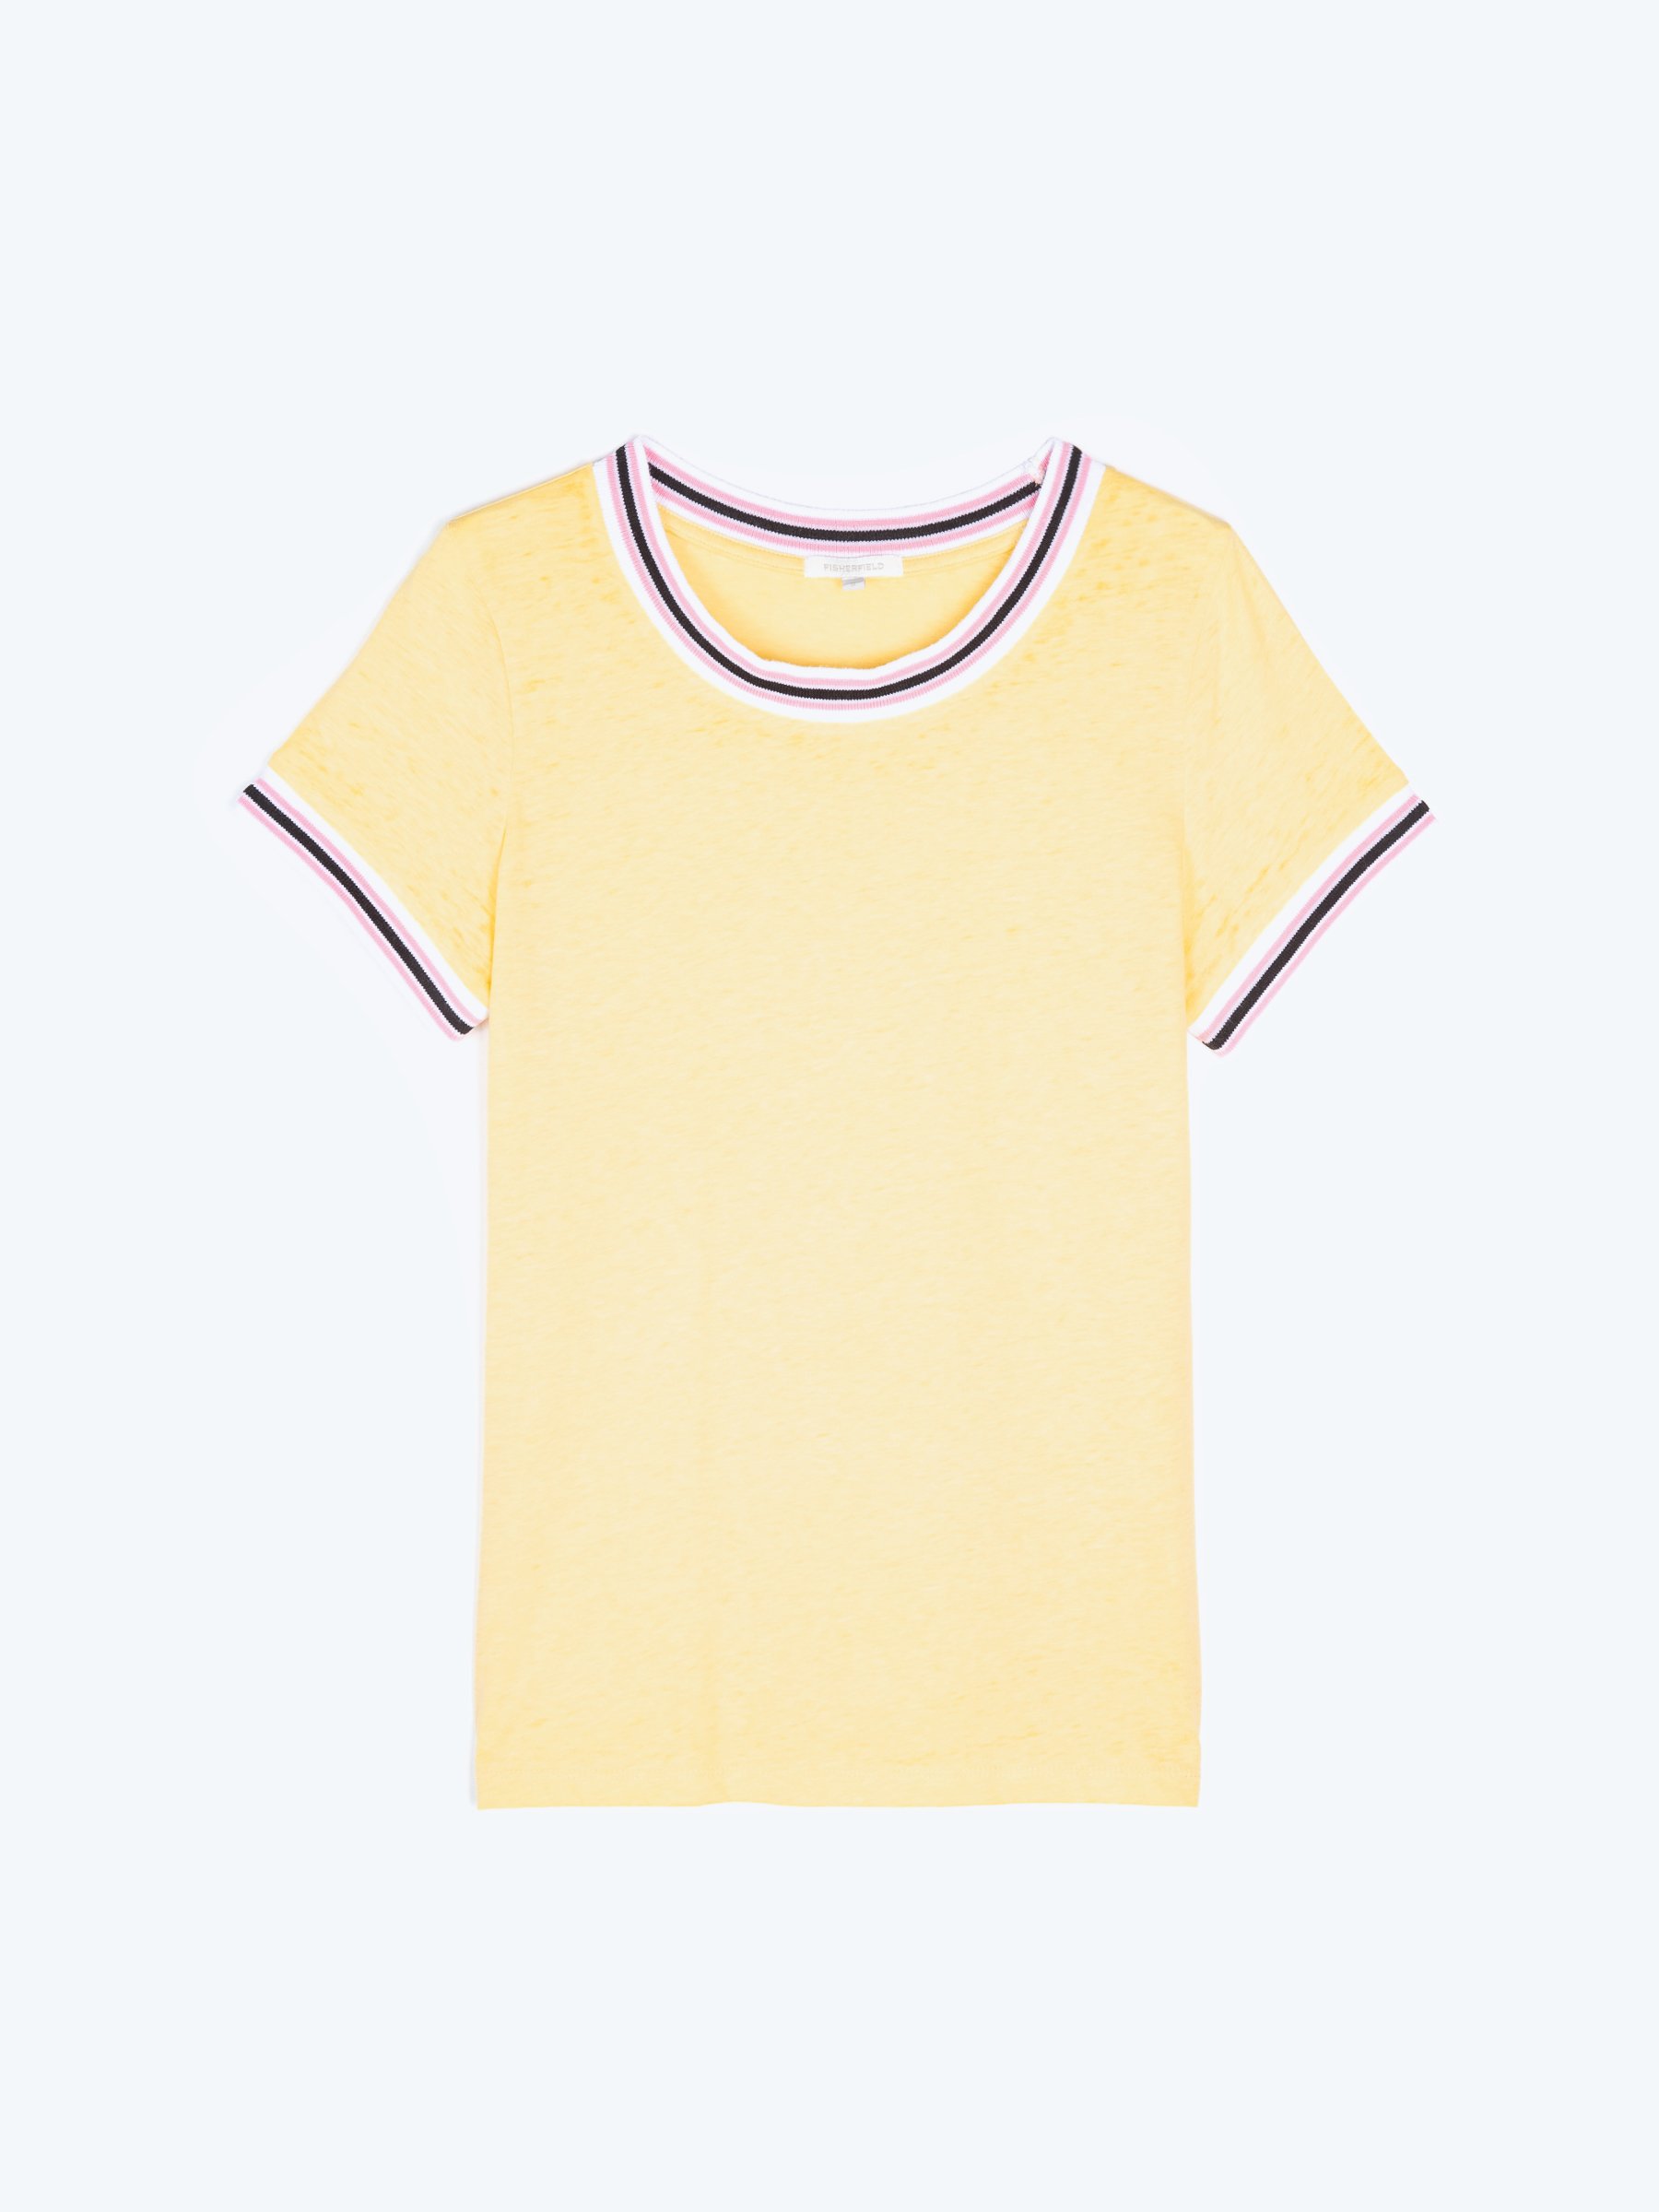 KIDS FASHION Shirts & T-shirts Ruffle Yellow 110                  EU discount 72% NoName blouse 